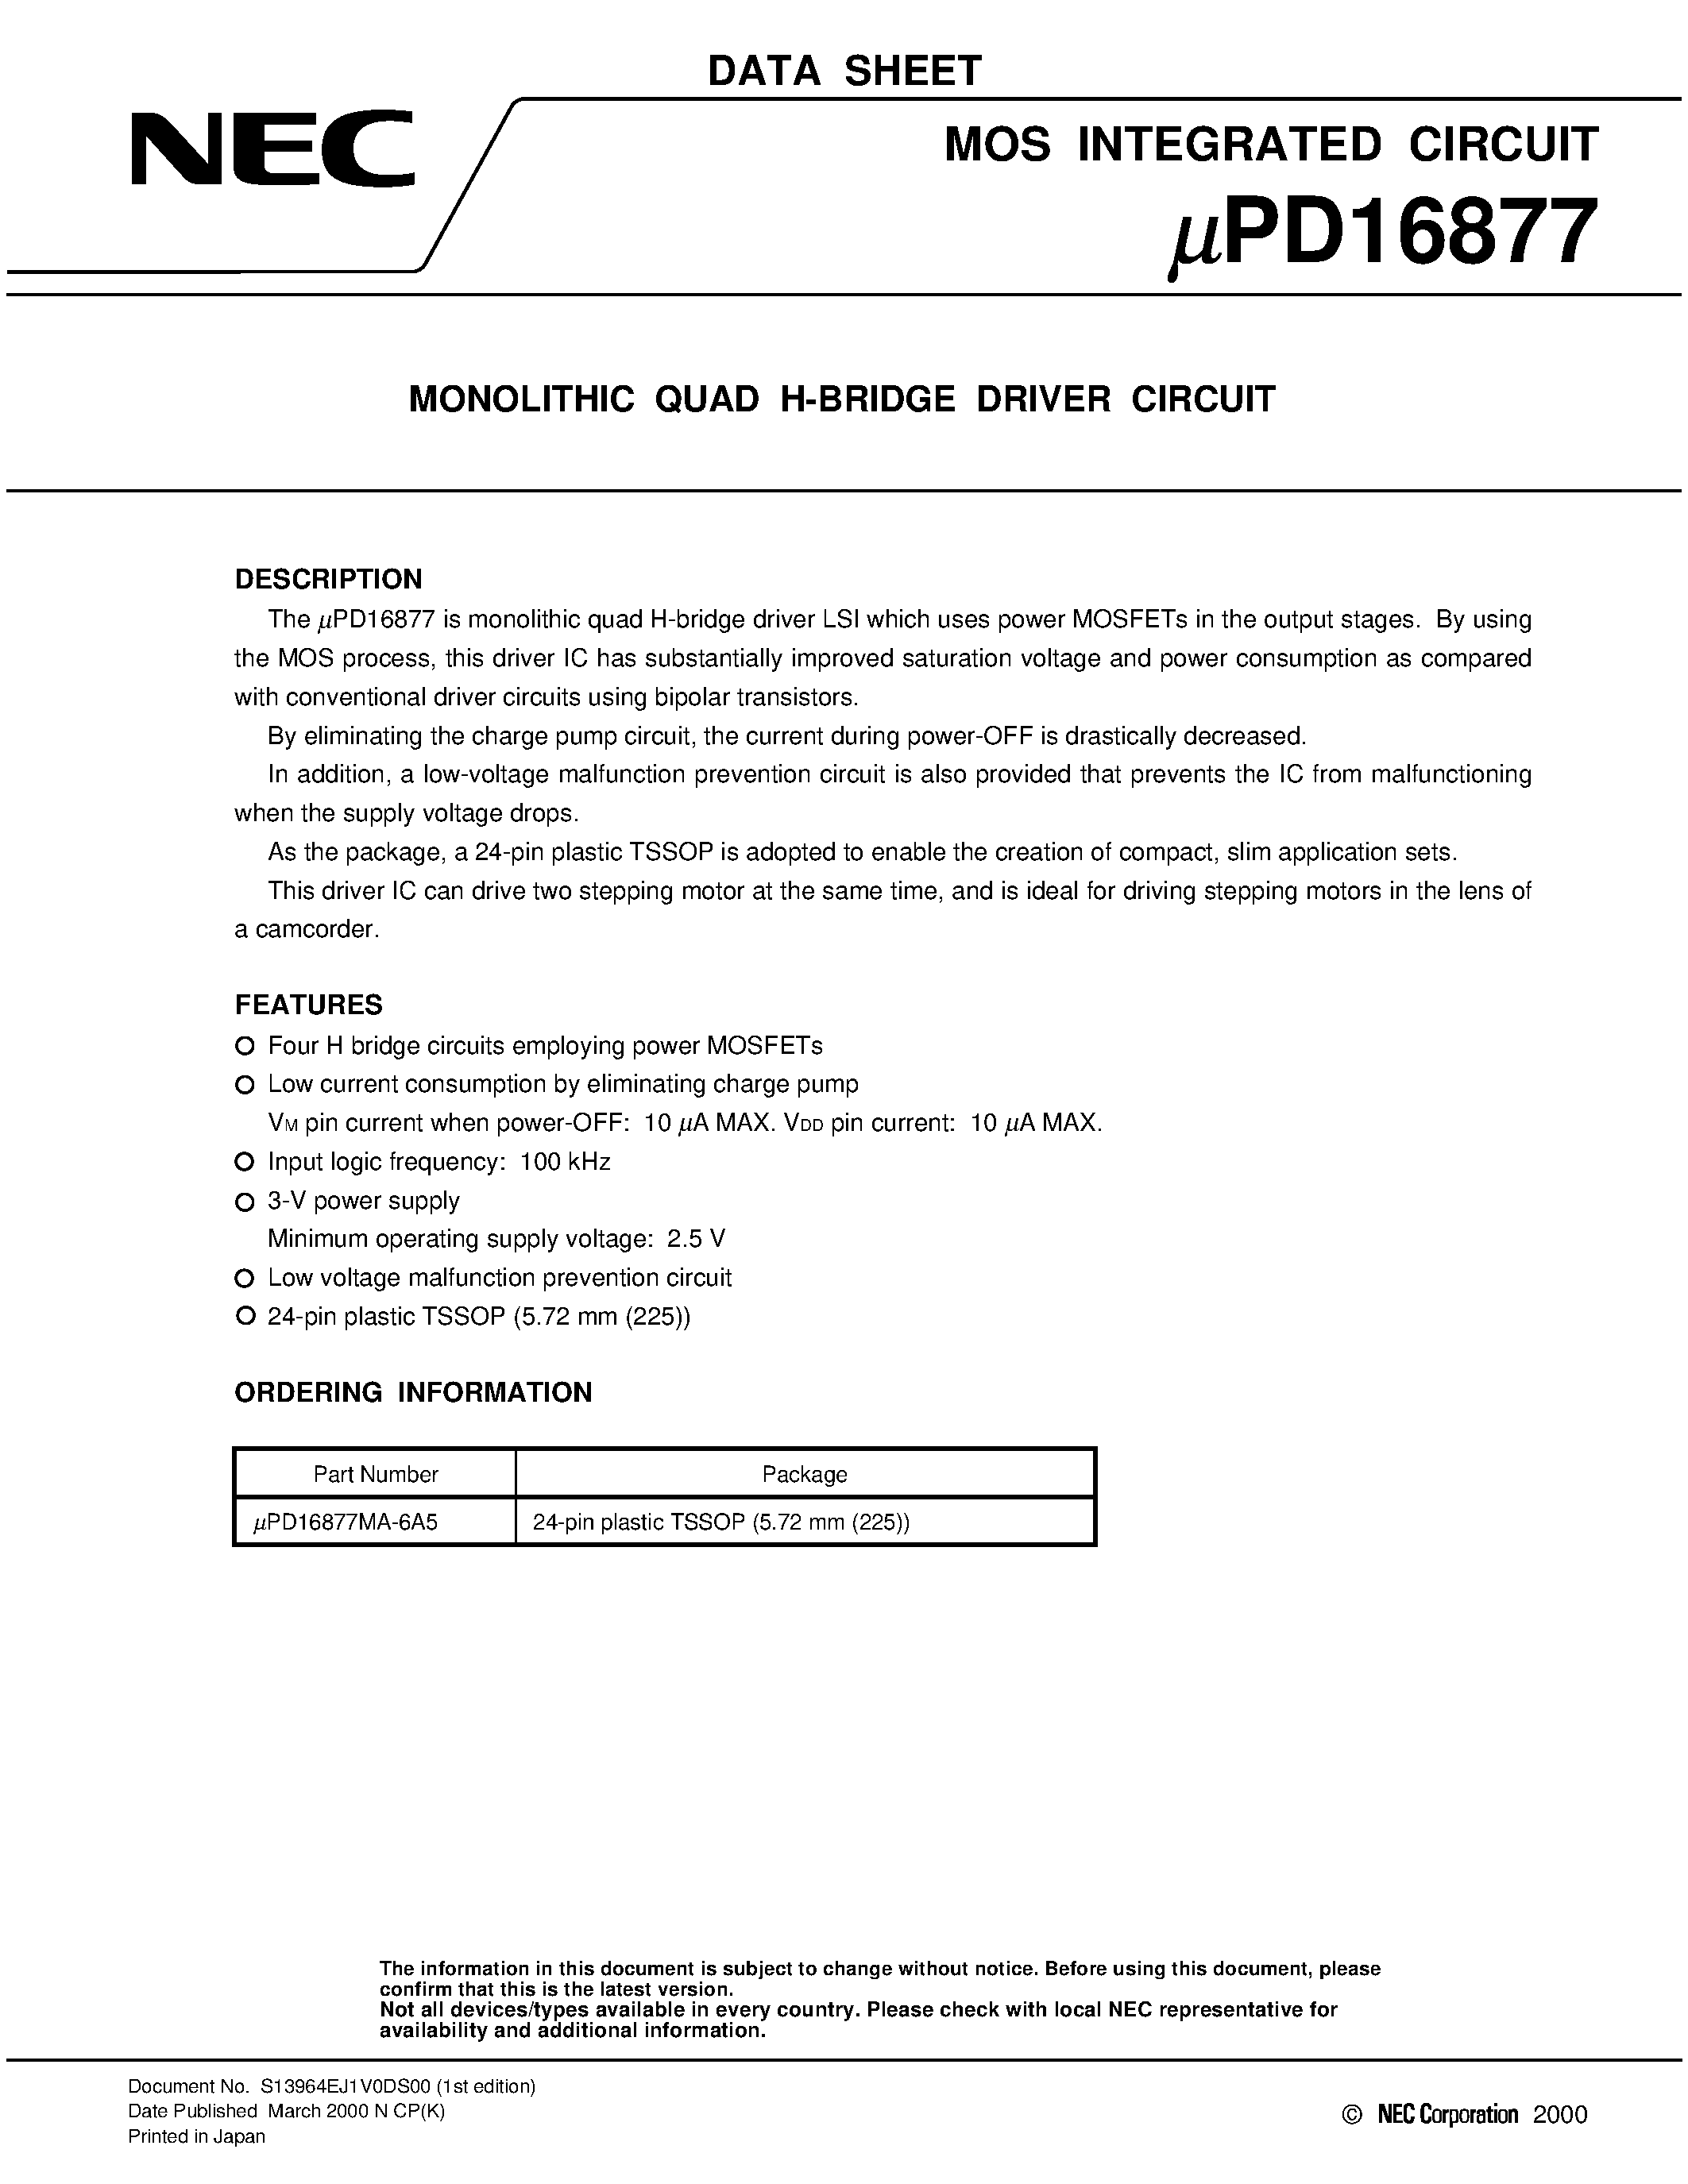 Даташит UPD16877MA-6A5 - MONOLITHIC QUAD H-BRIDGE DRIVER CIRCUIT страница 1